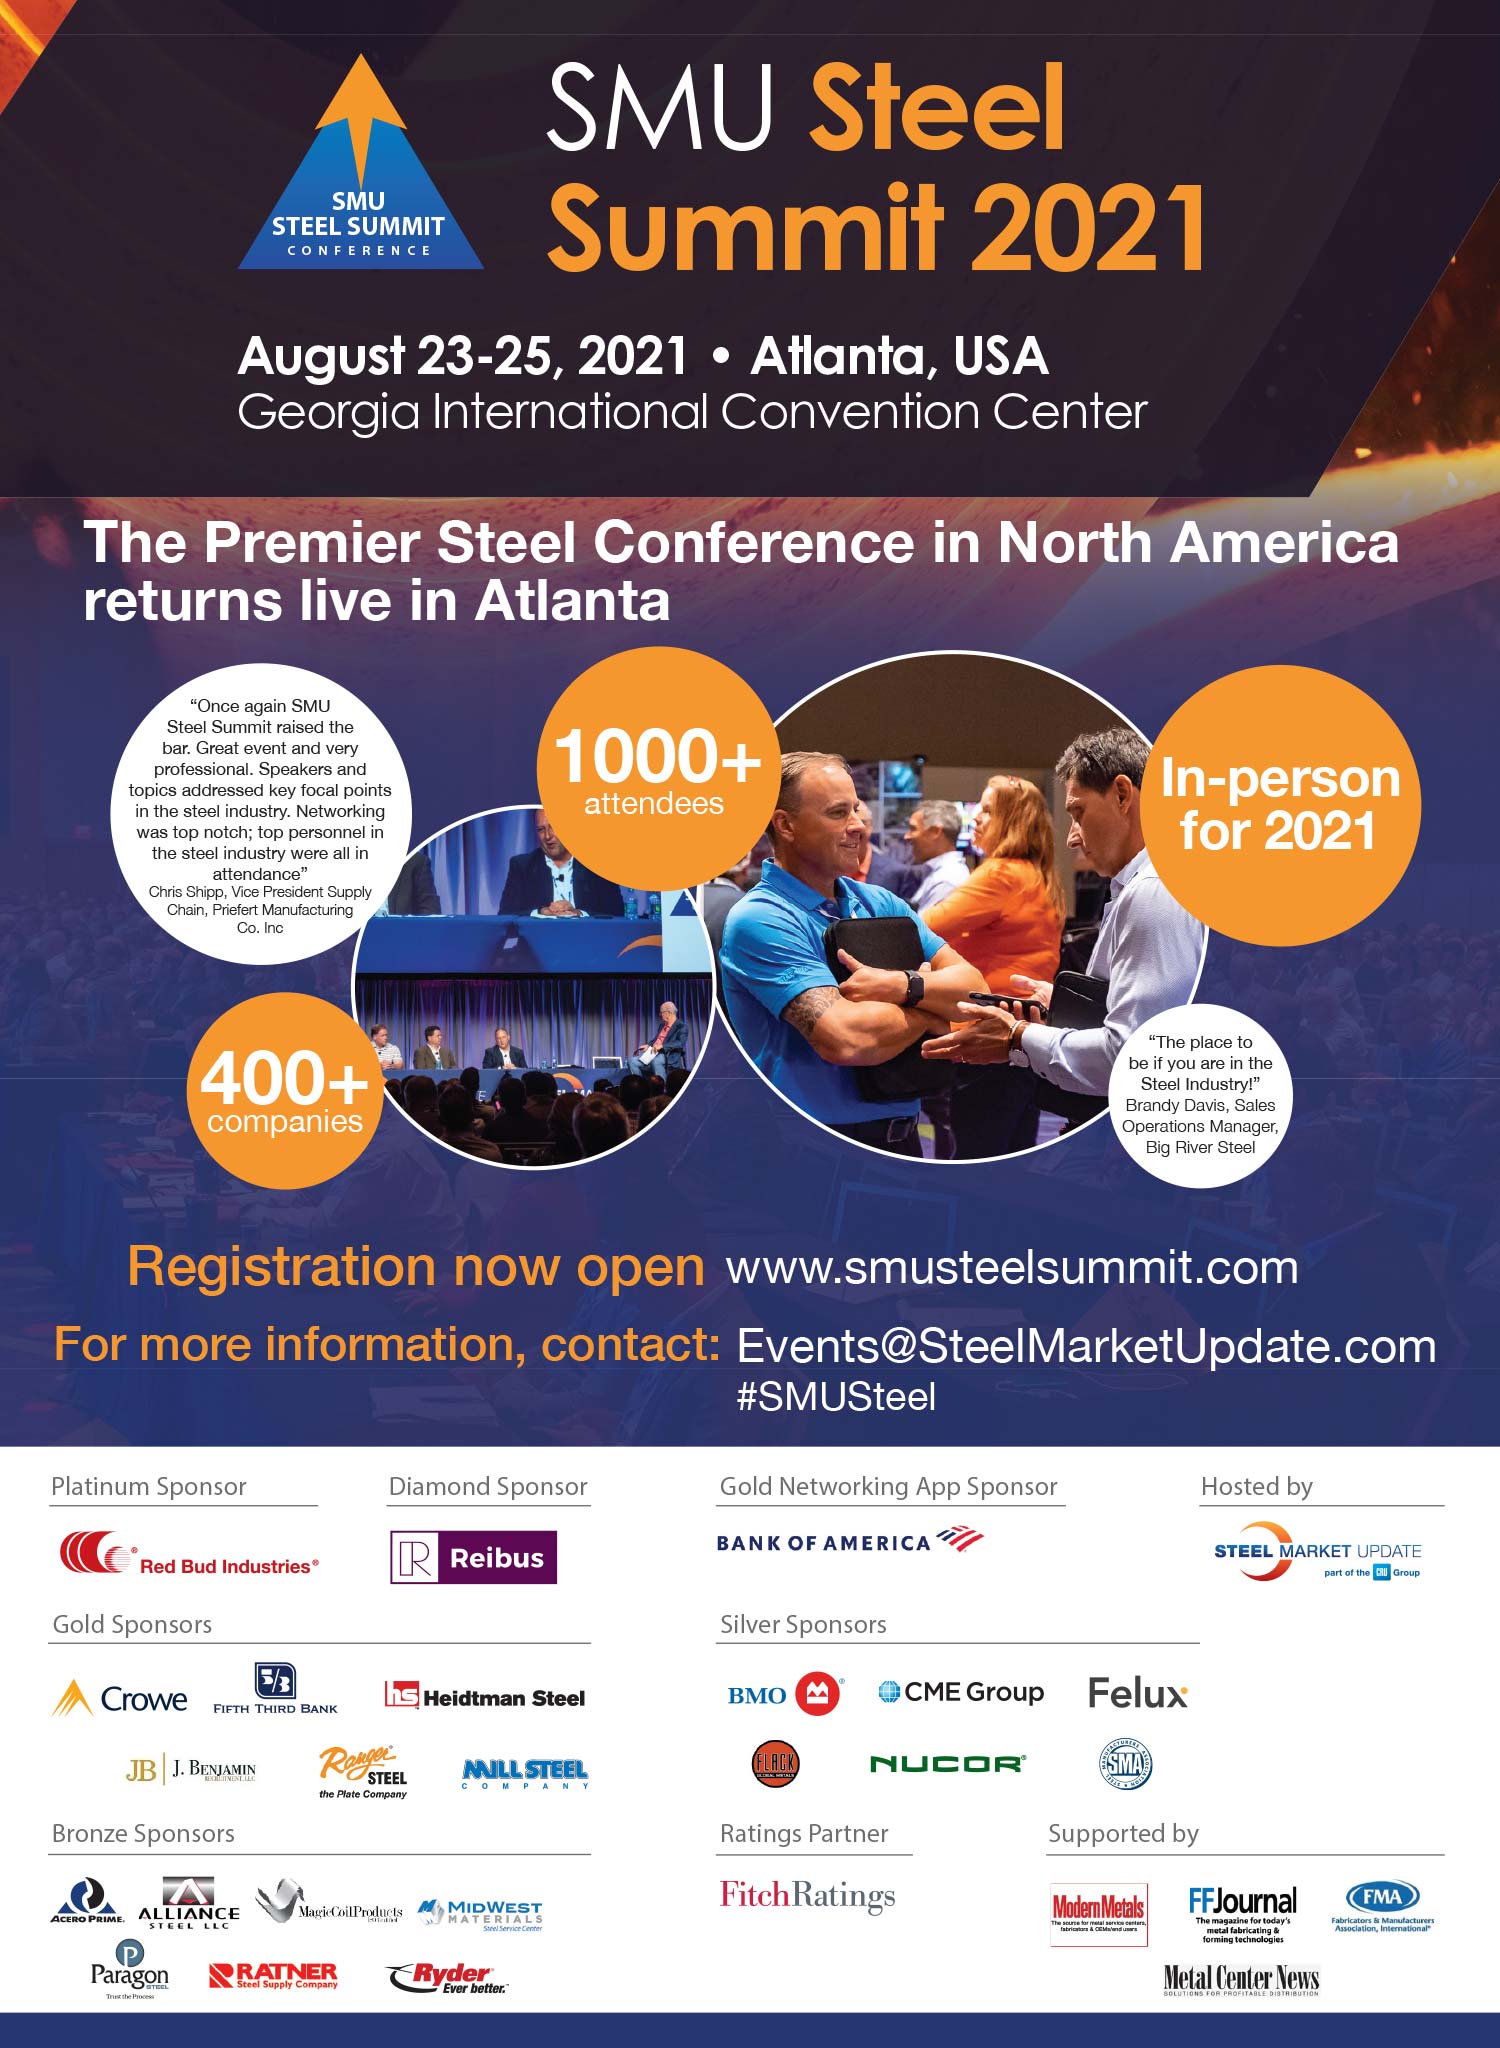 SMU Steel Summit 2021 Advertisement